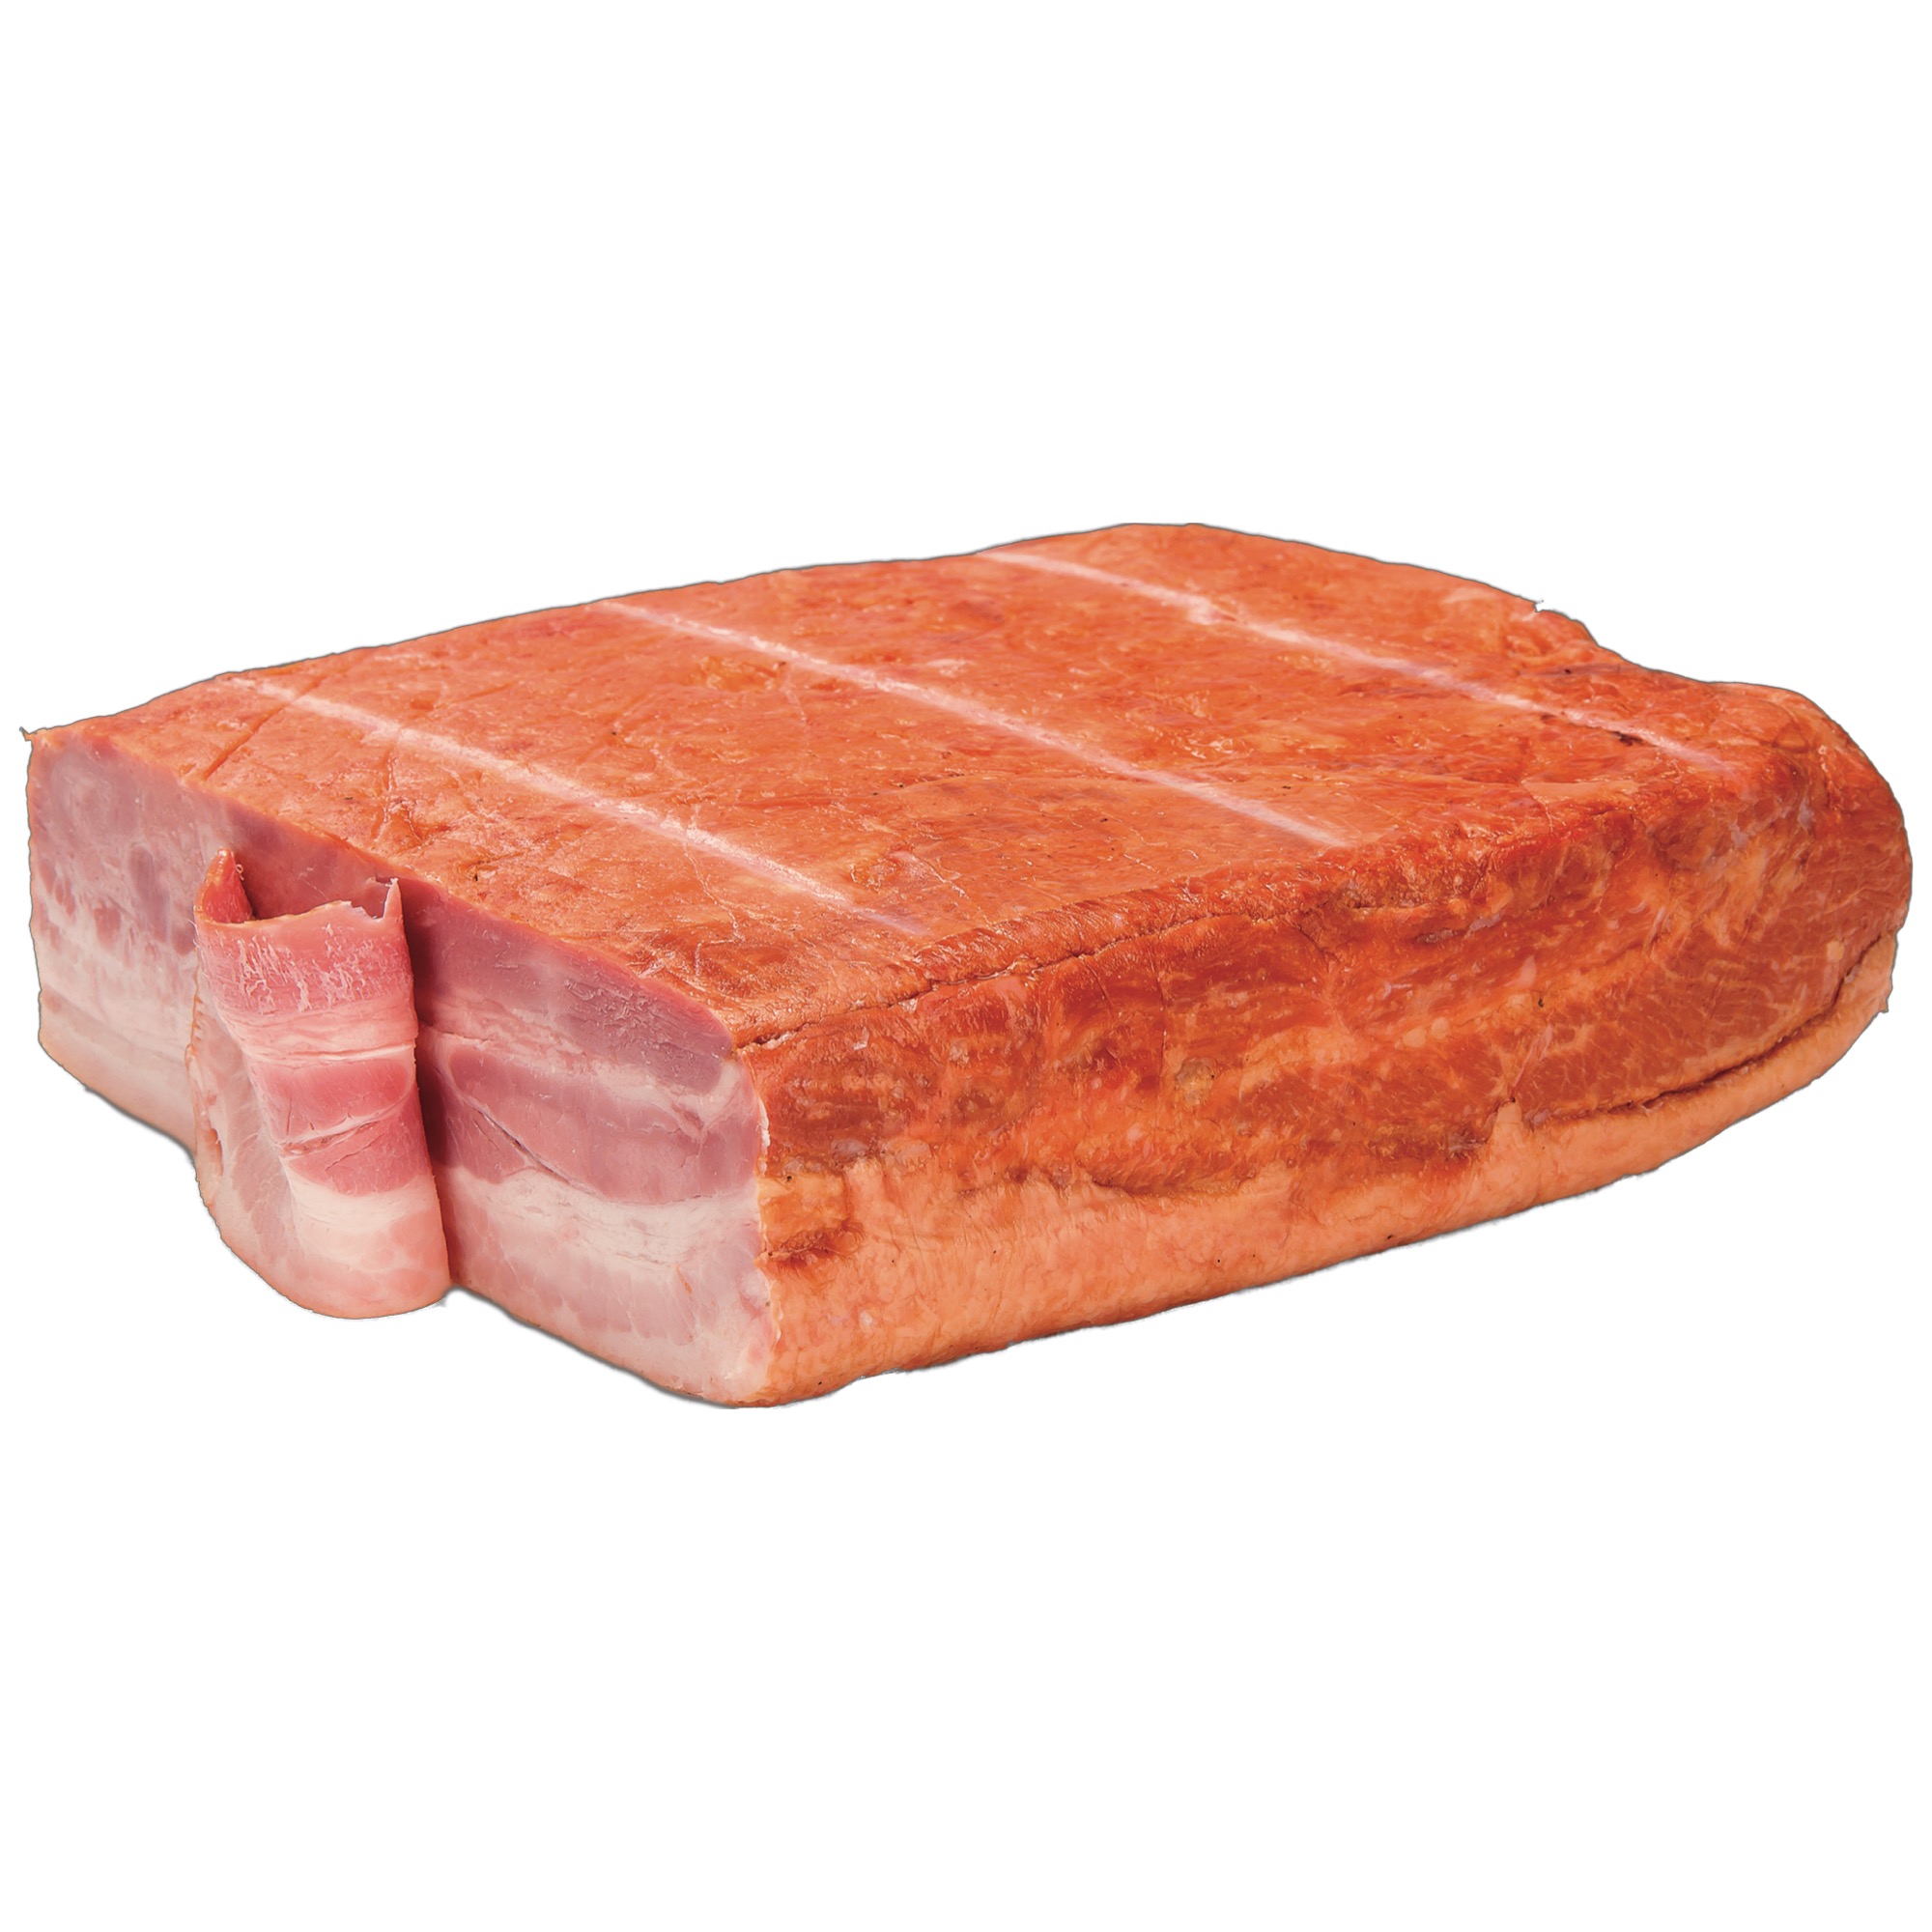 Economy Gastro Bacon halbiert ca 2kg